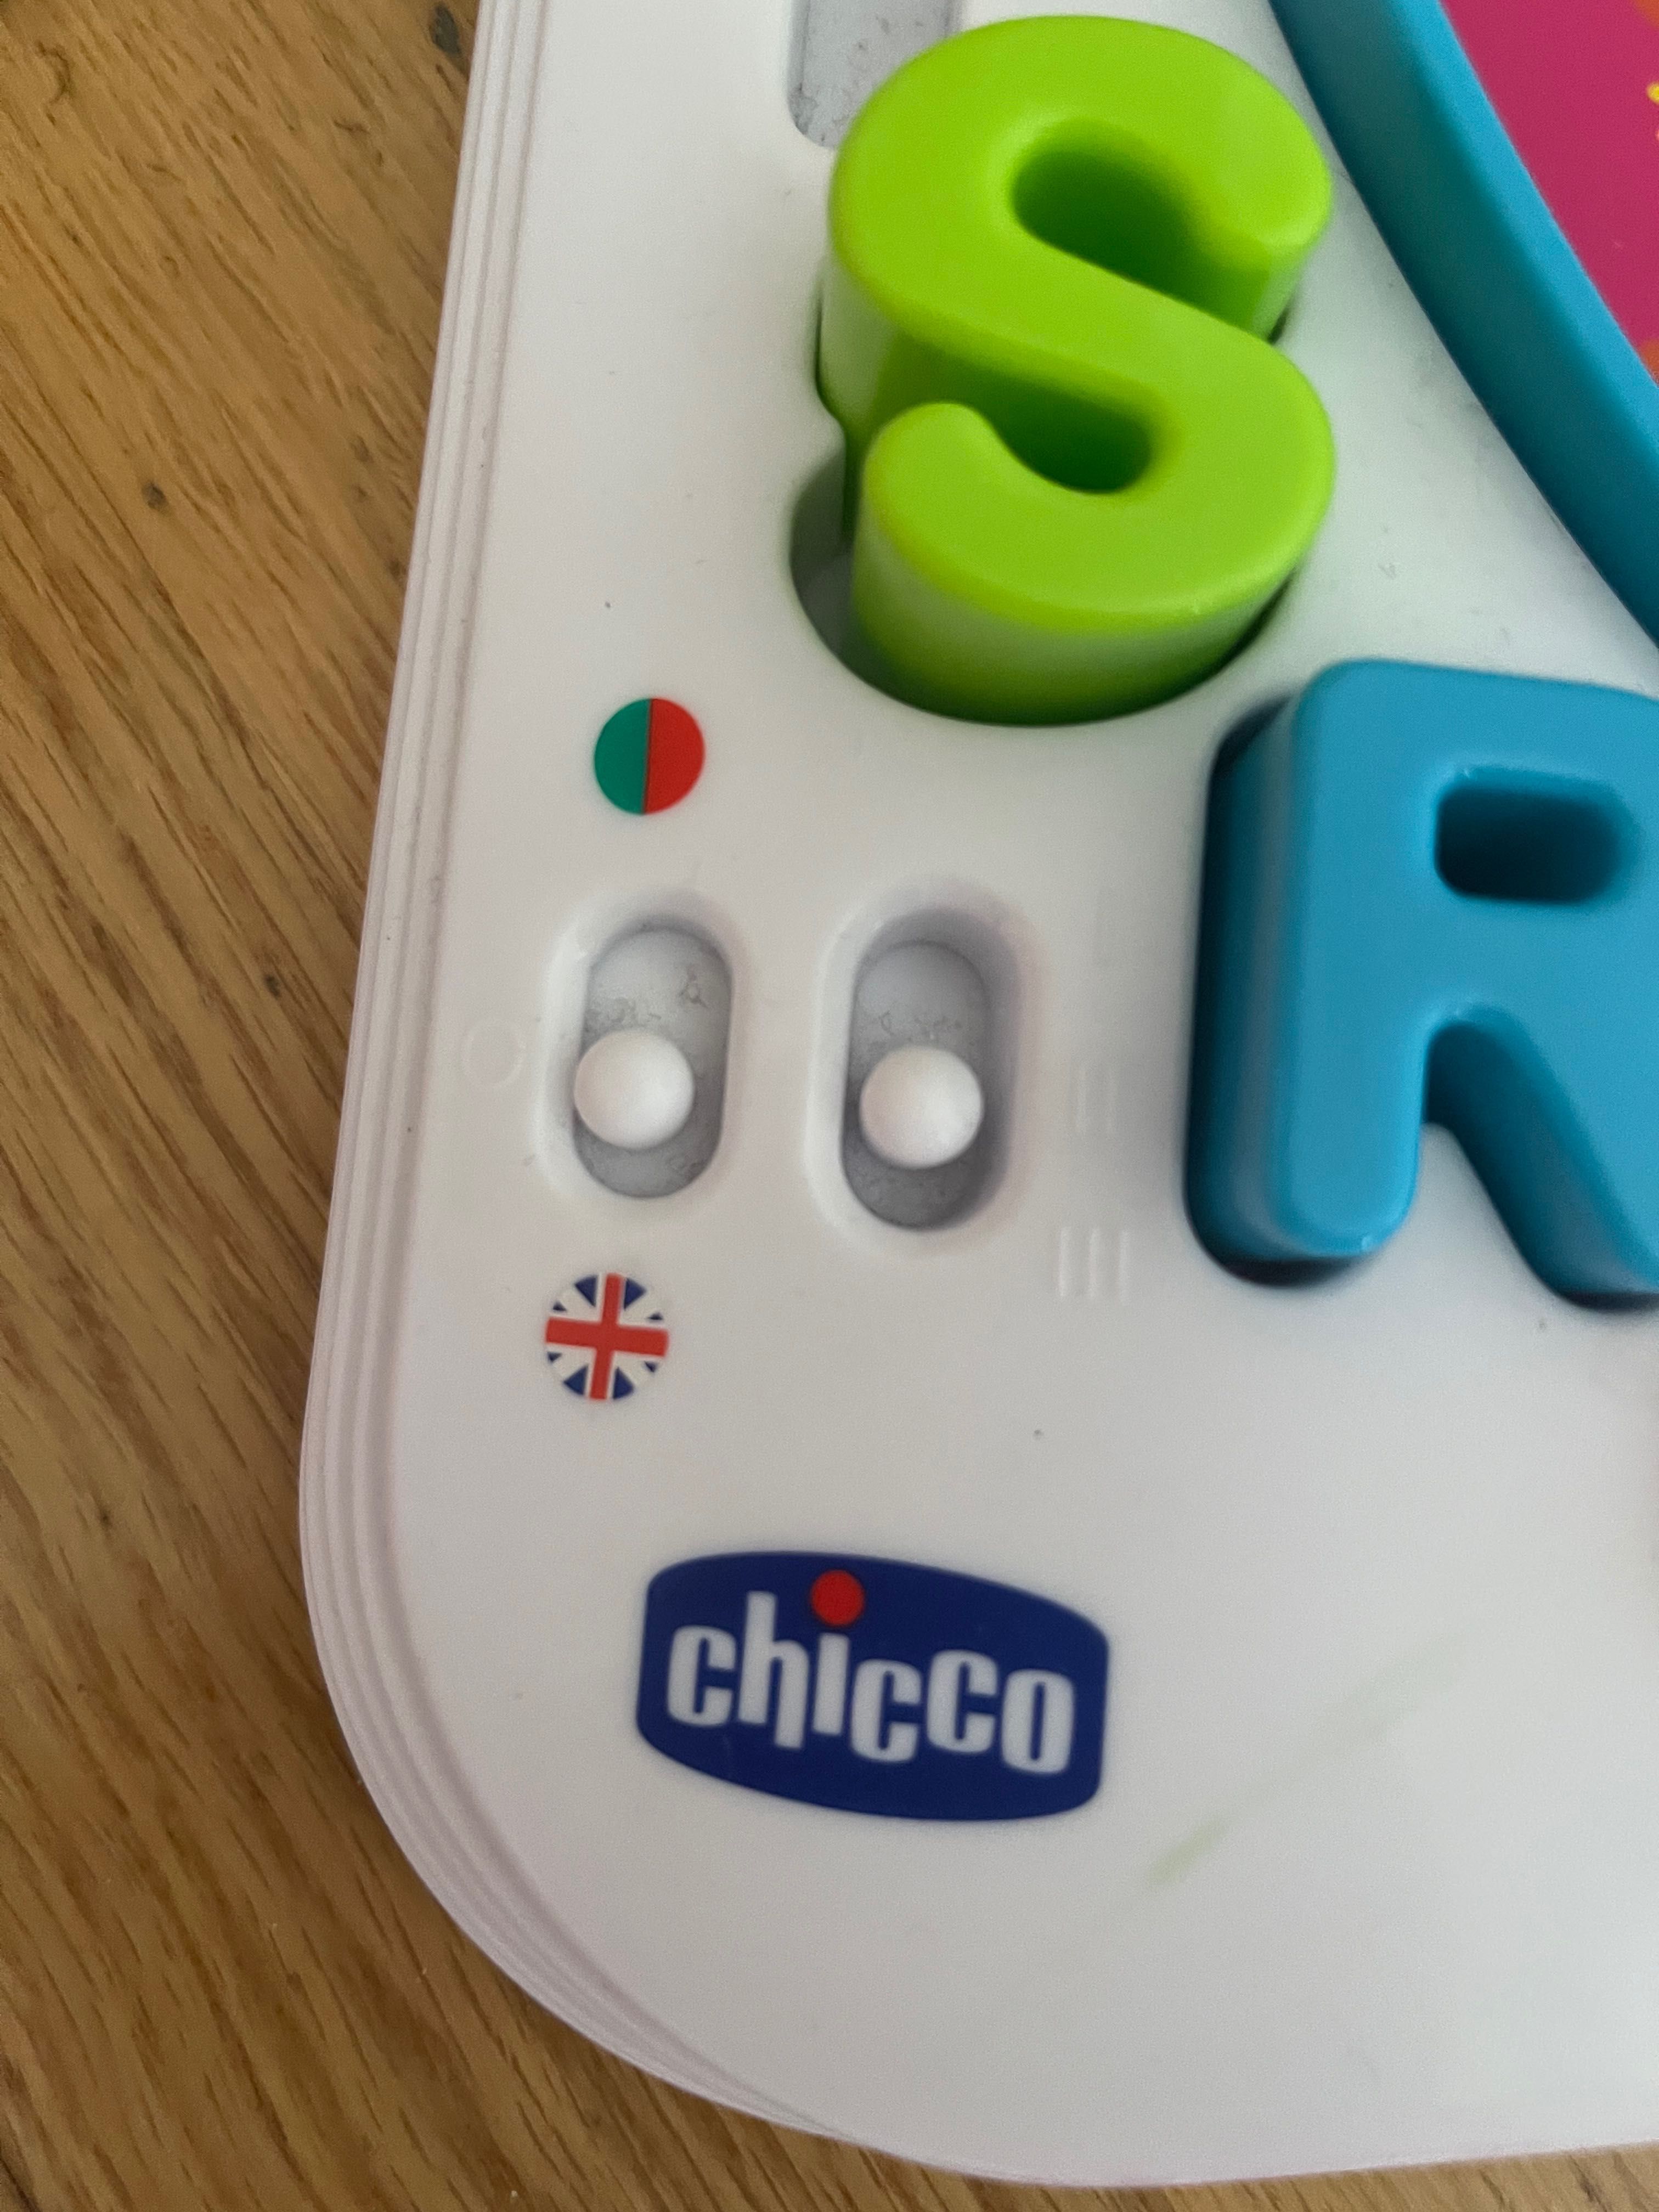 Baby Prof Chicco brinquedo interativo para aprender as letras